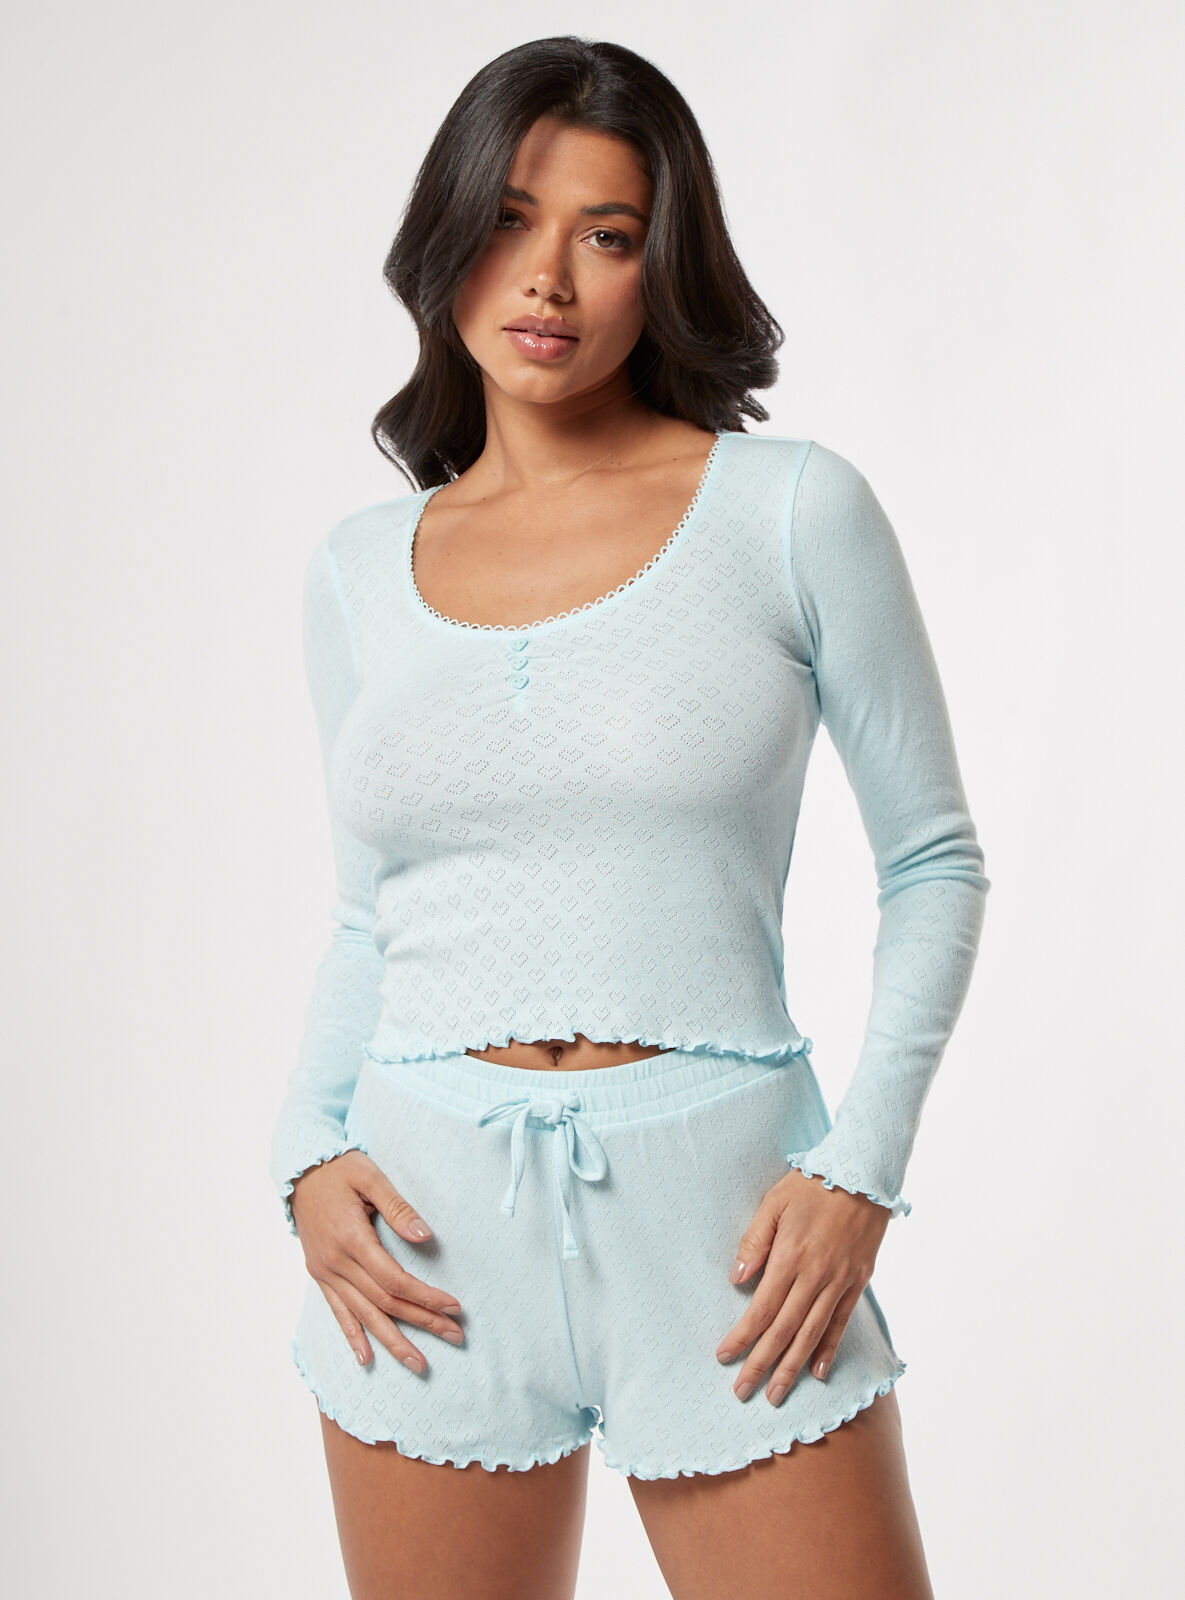 Boux Avenue Heart pointelle cotton short pyjama set - Aqua - 14